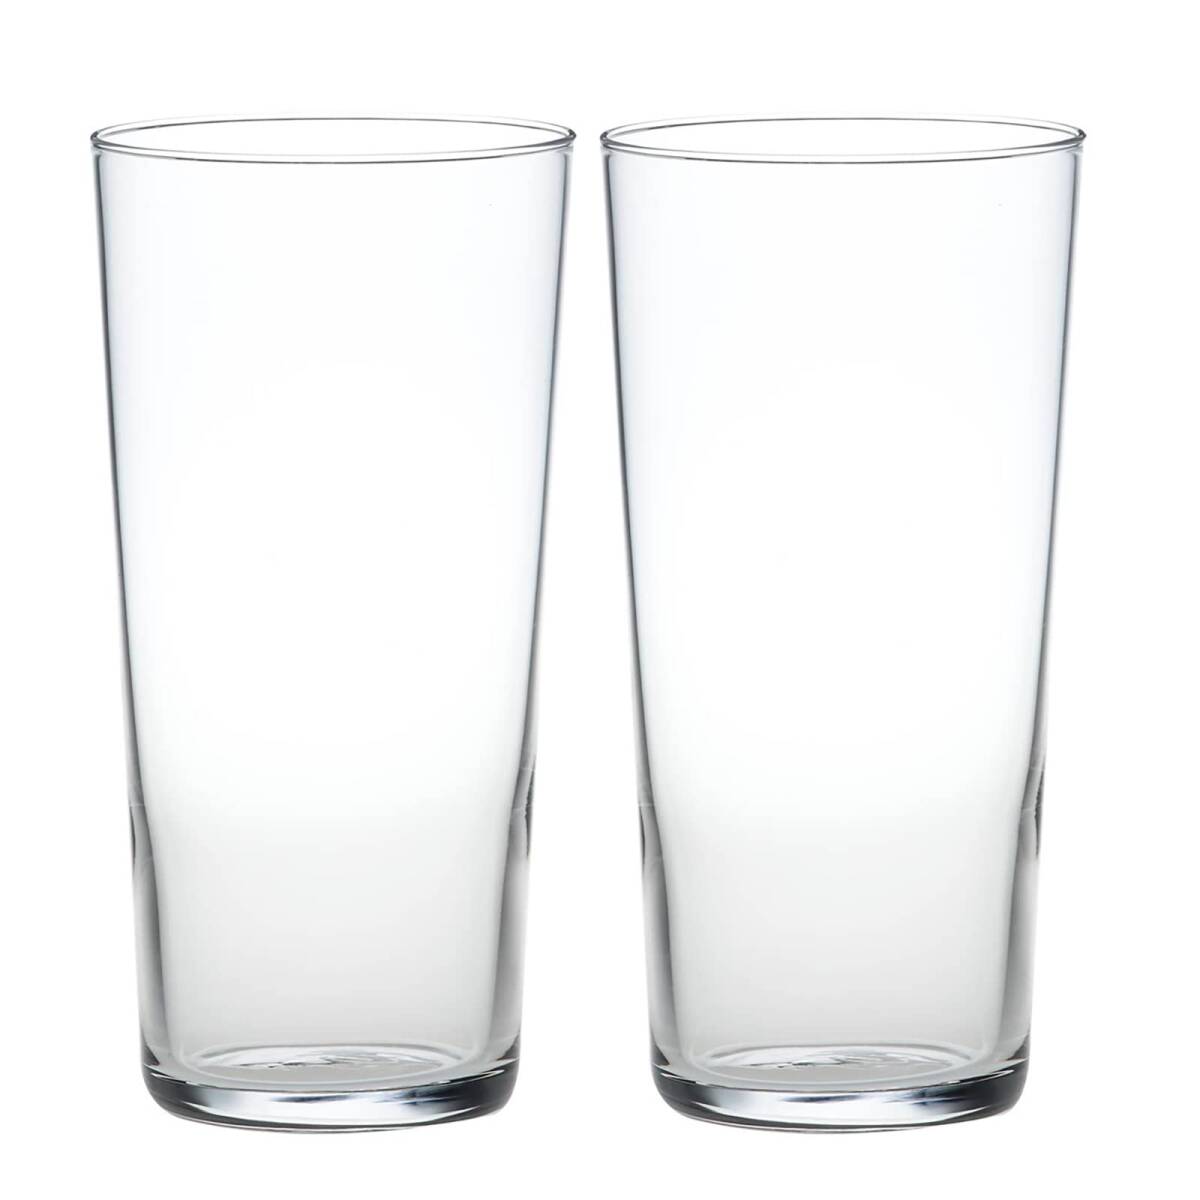 東洋佐々木ガラス タンブラーグラス 薄づくりグラスセット 400ml 2個セット 口当たりの良さと軽さが特徴グラス 日本製 食洗機対応 クリア_画像1